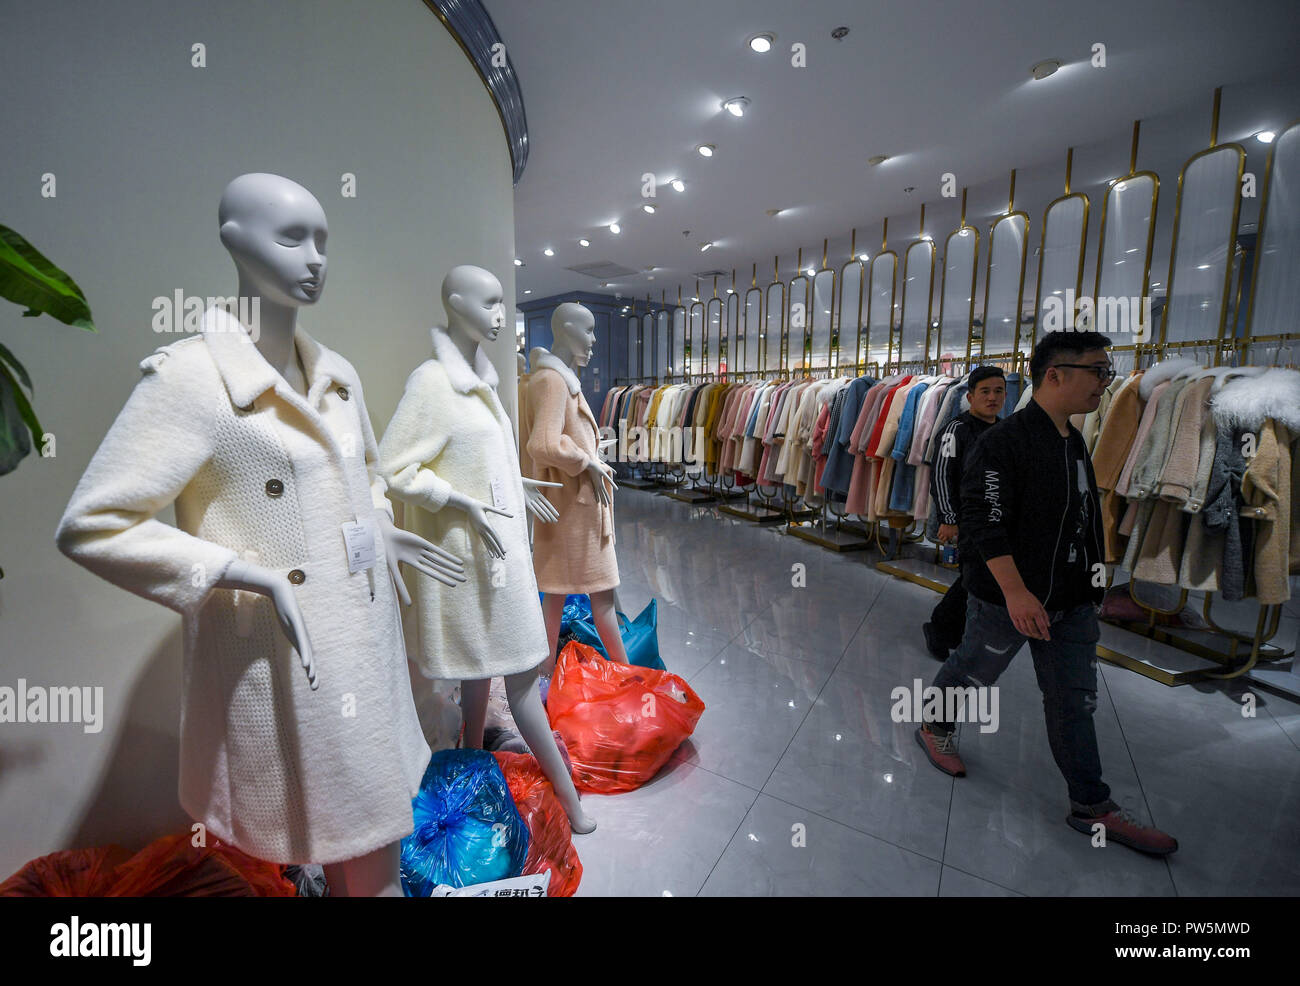 (181012) -- TONGXIANG, 12 de octubre de 2018 (Xinhua) -- Foto tomada el 11 de octubre de 2018, muestran que los clientes de compras en una tienda en la ciudad Puyuan suéter en Tongxiang, provincia de Zhejiang de China oriental. Puyuan, un pequeño pueblo de la provincia de Zhejiang, es considerado como el mayor centro comercial para el jersey de lana de China. Posee 19 zonas comerciales, más de 10.000 empresas suéter suéter y más de 10.000 tiendas. Un gran número de comerciantes y mercancías que entran y salen de la ciudad ha hecho su suéter comercio representan el 60 por ciento del total nacional. (Xinhua/Xu Yu) (wyl) Foto de stock